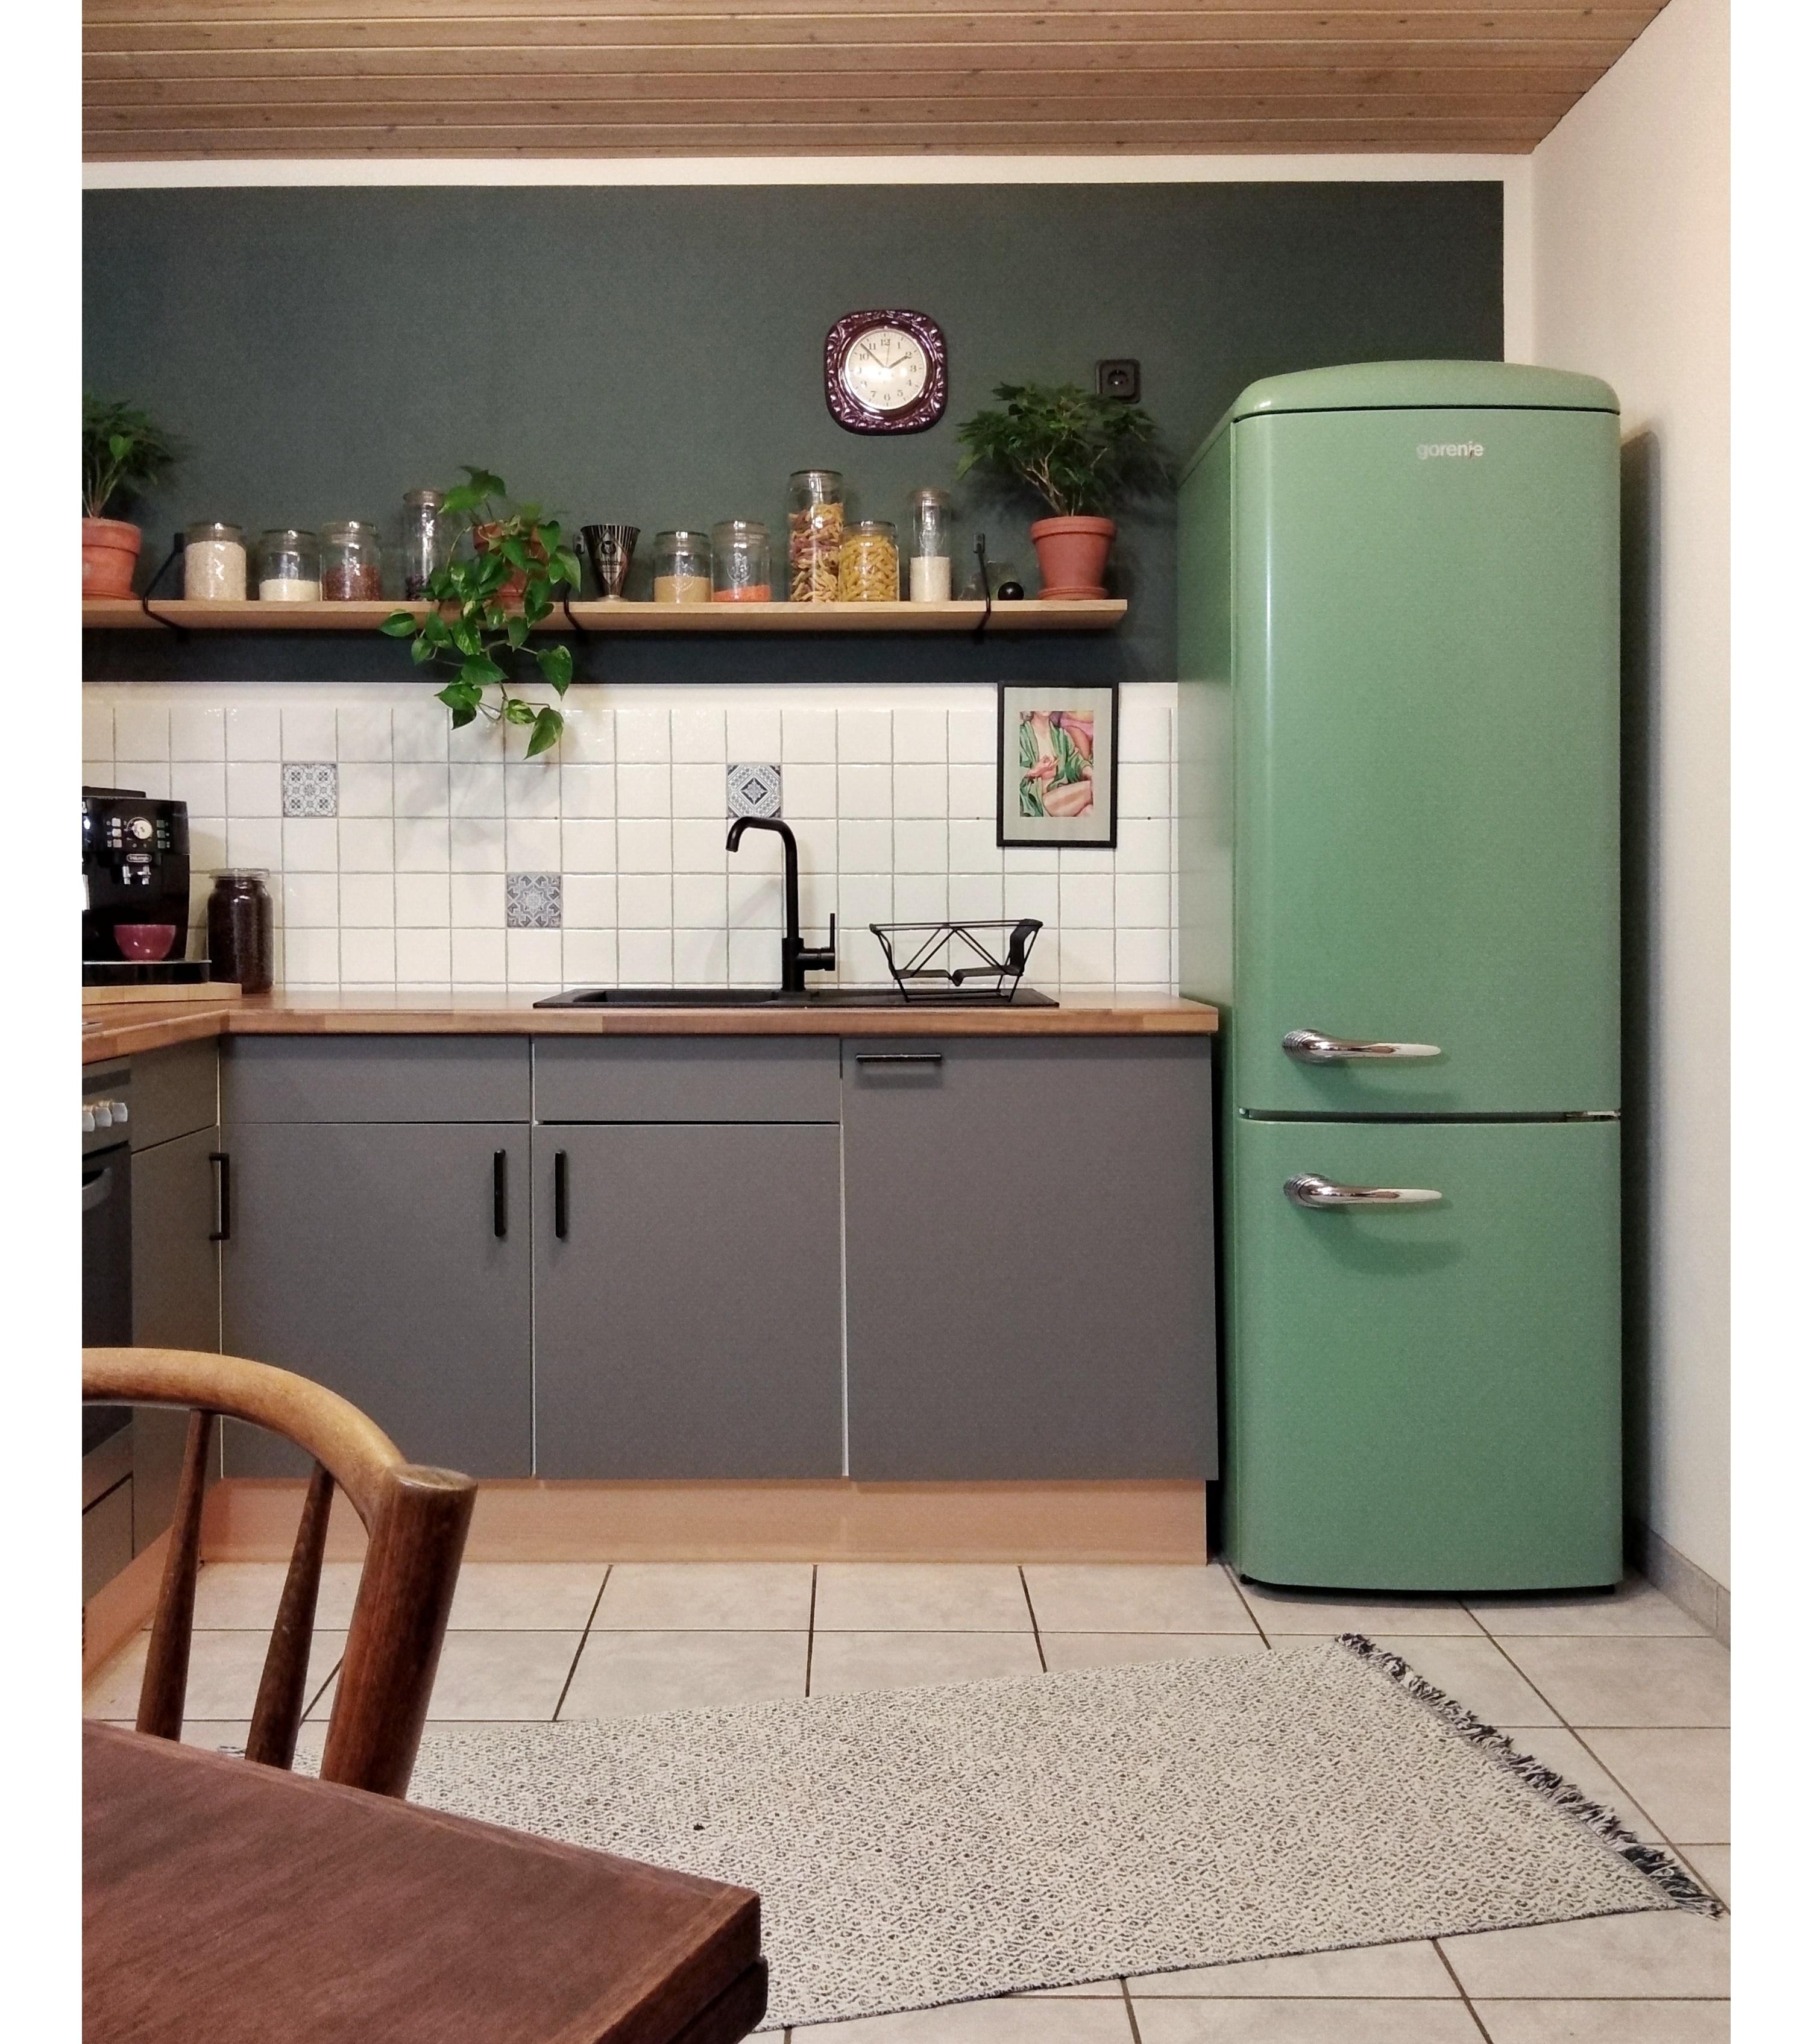 Küchenliebe bzw. Kühlschrankliebe 💚 #küche #retrokühlschrank #greenlove 